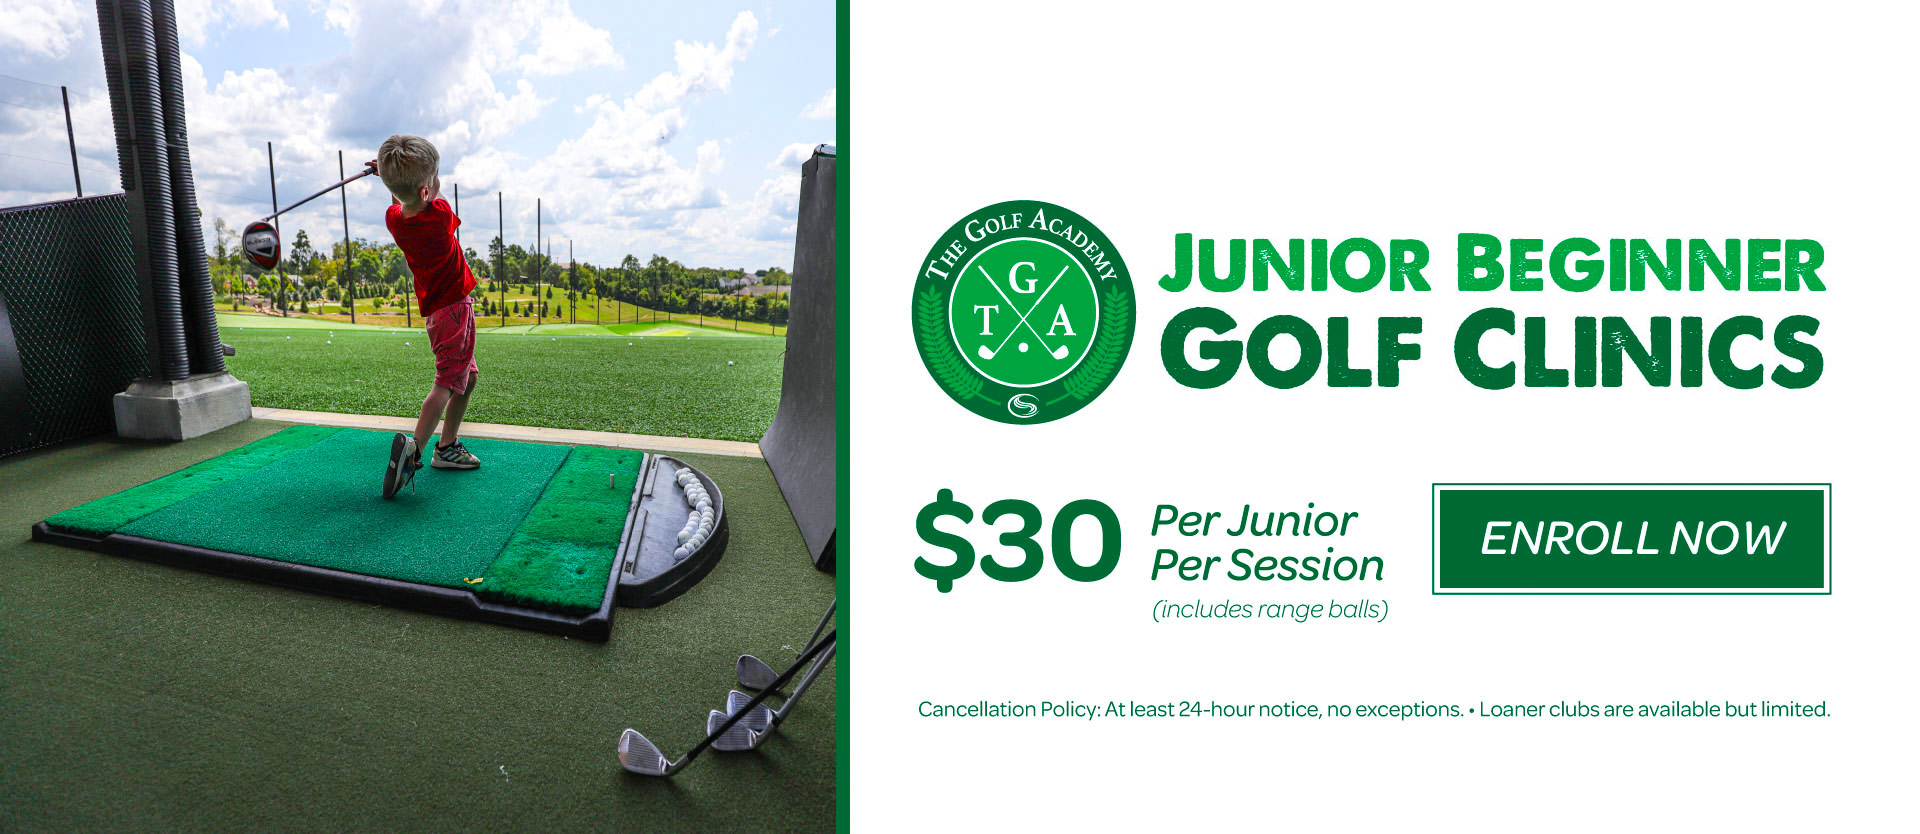 Junior Beginner Golf Clinics - Enroll now